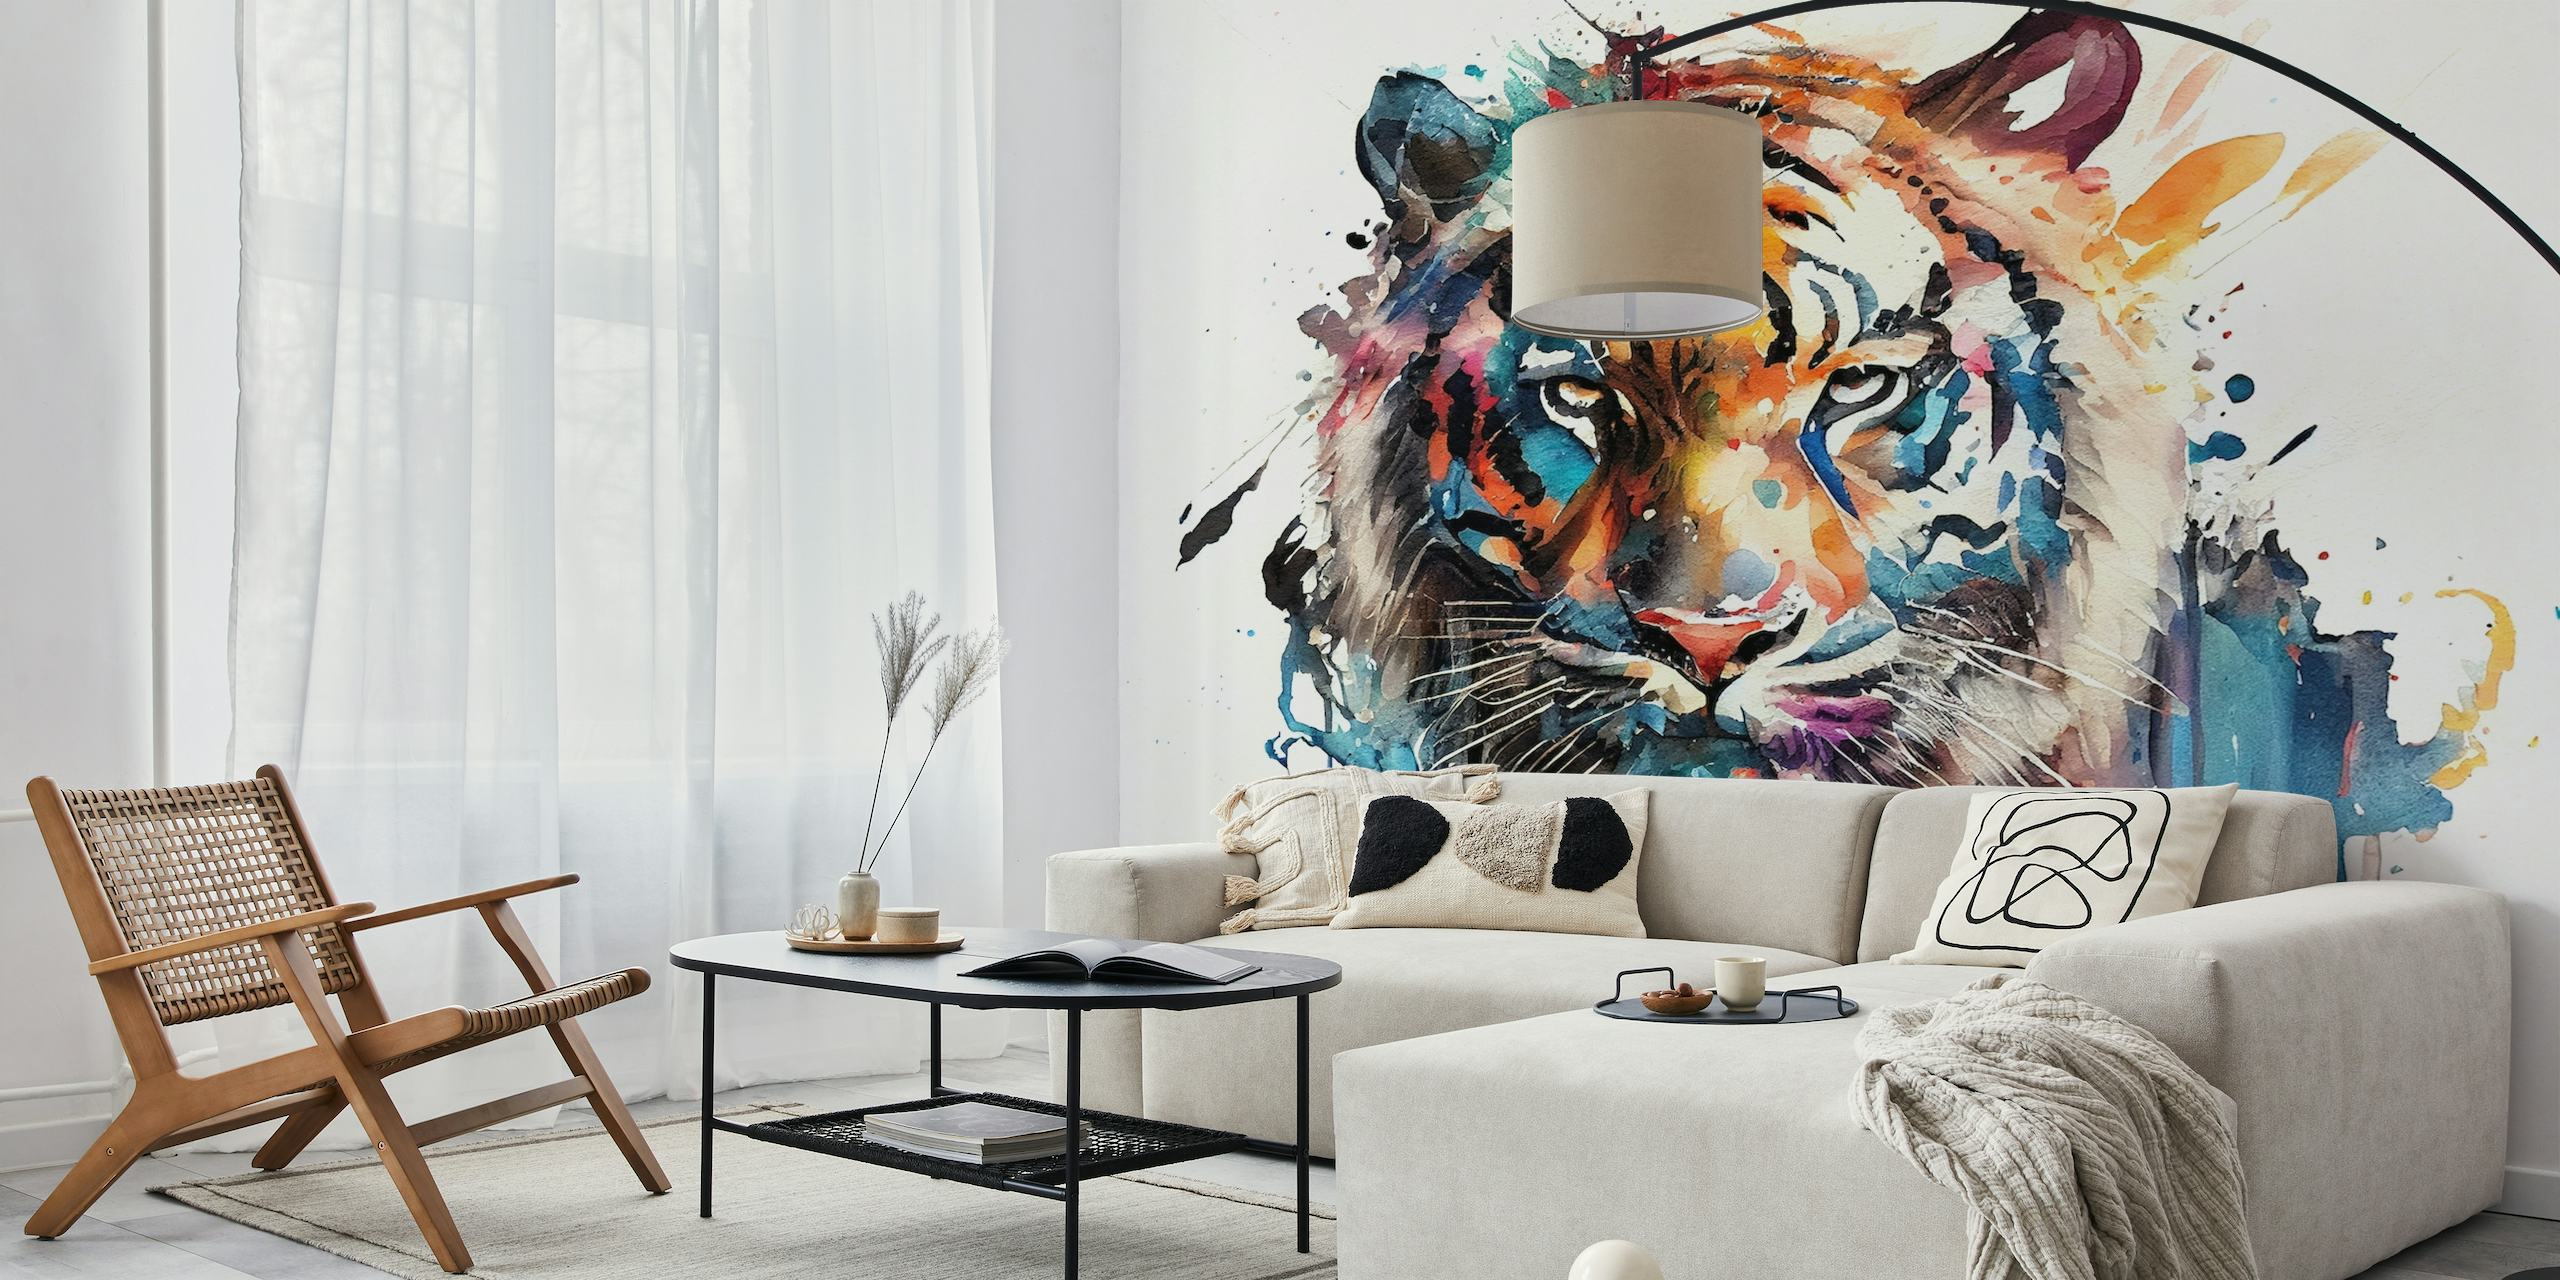 Uma aquarela de um tigre com mistura de cores vibrantes sobre fundo branco, transformada em mural de parede.